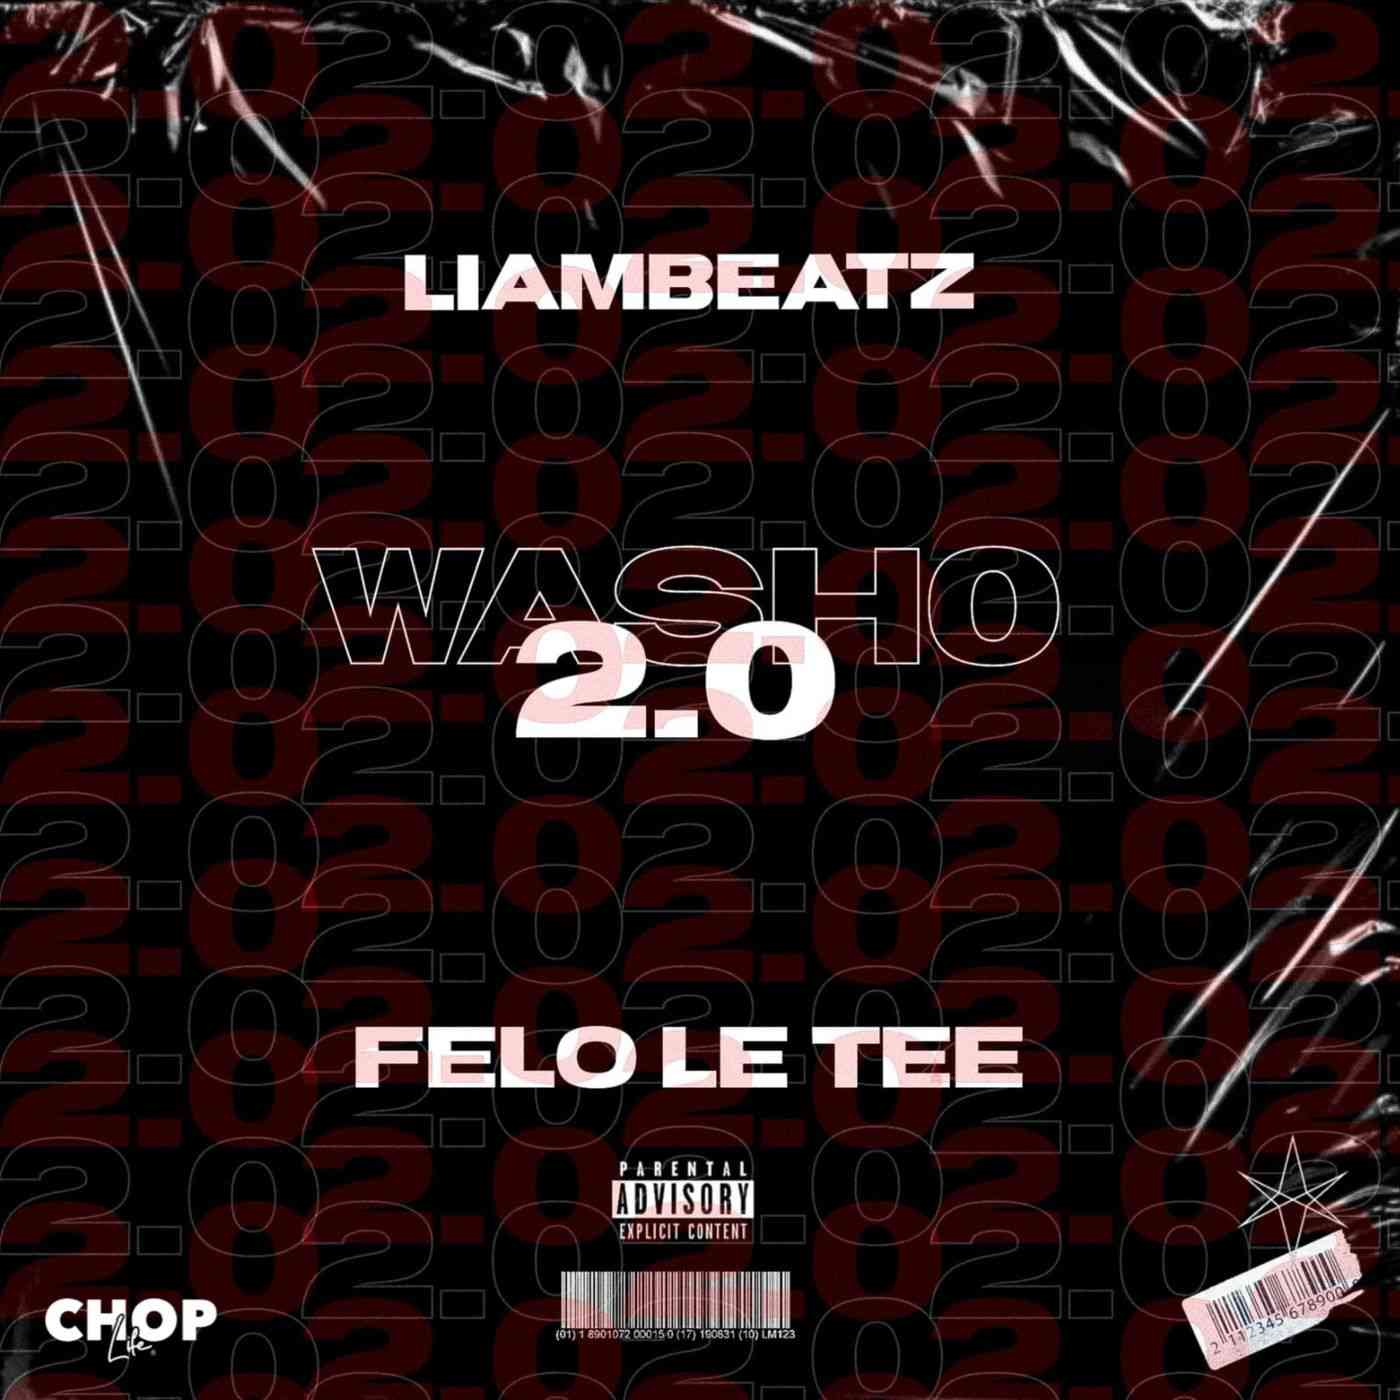 Felo Le Tee & Liam Beatz - Washo 2.0